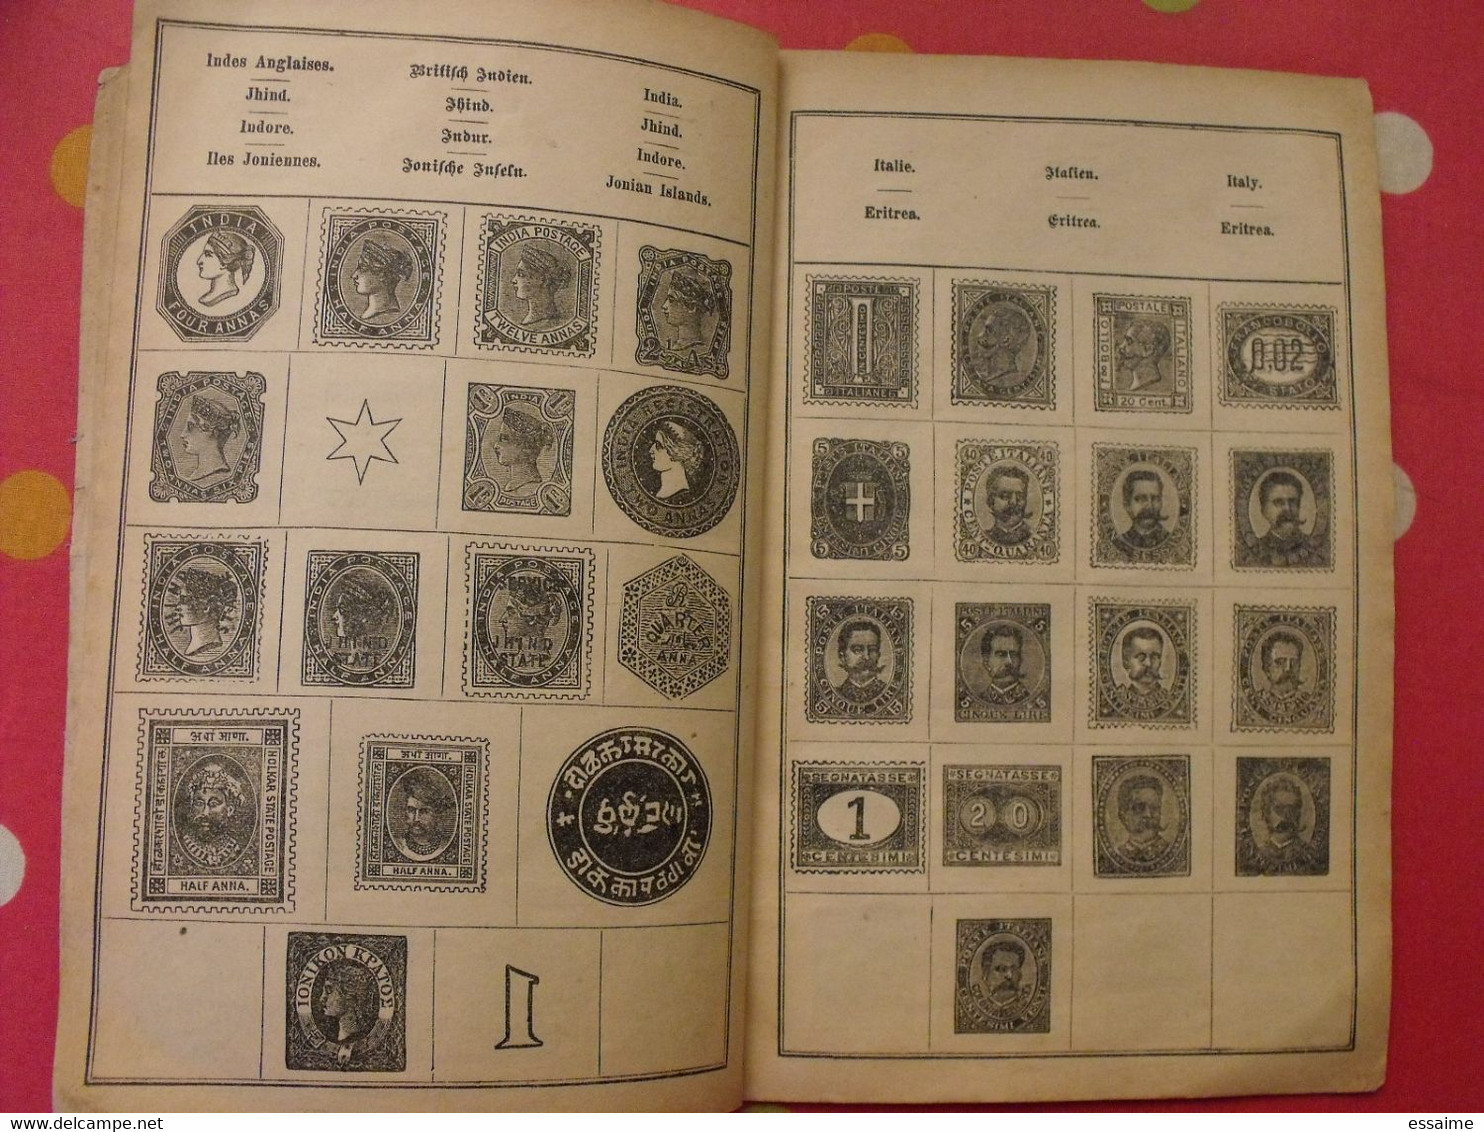 album illustré de timbres poste vers 1890. sans timbres. superbe illustration pour chaque timbre. schutzmarke